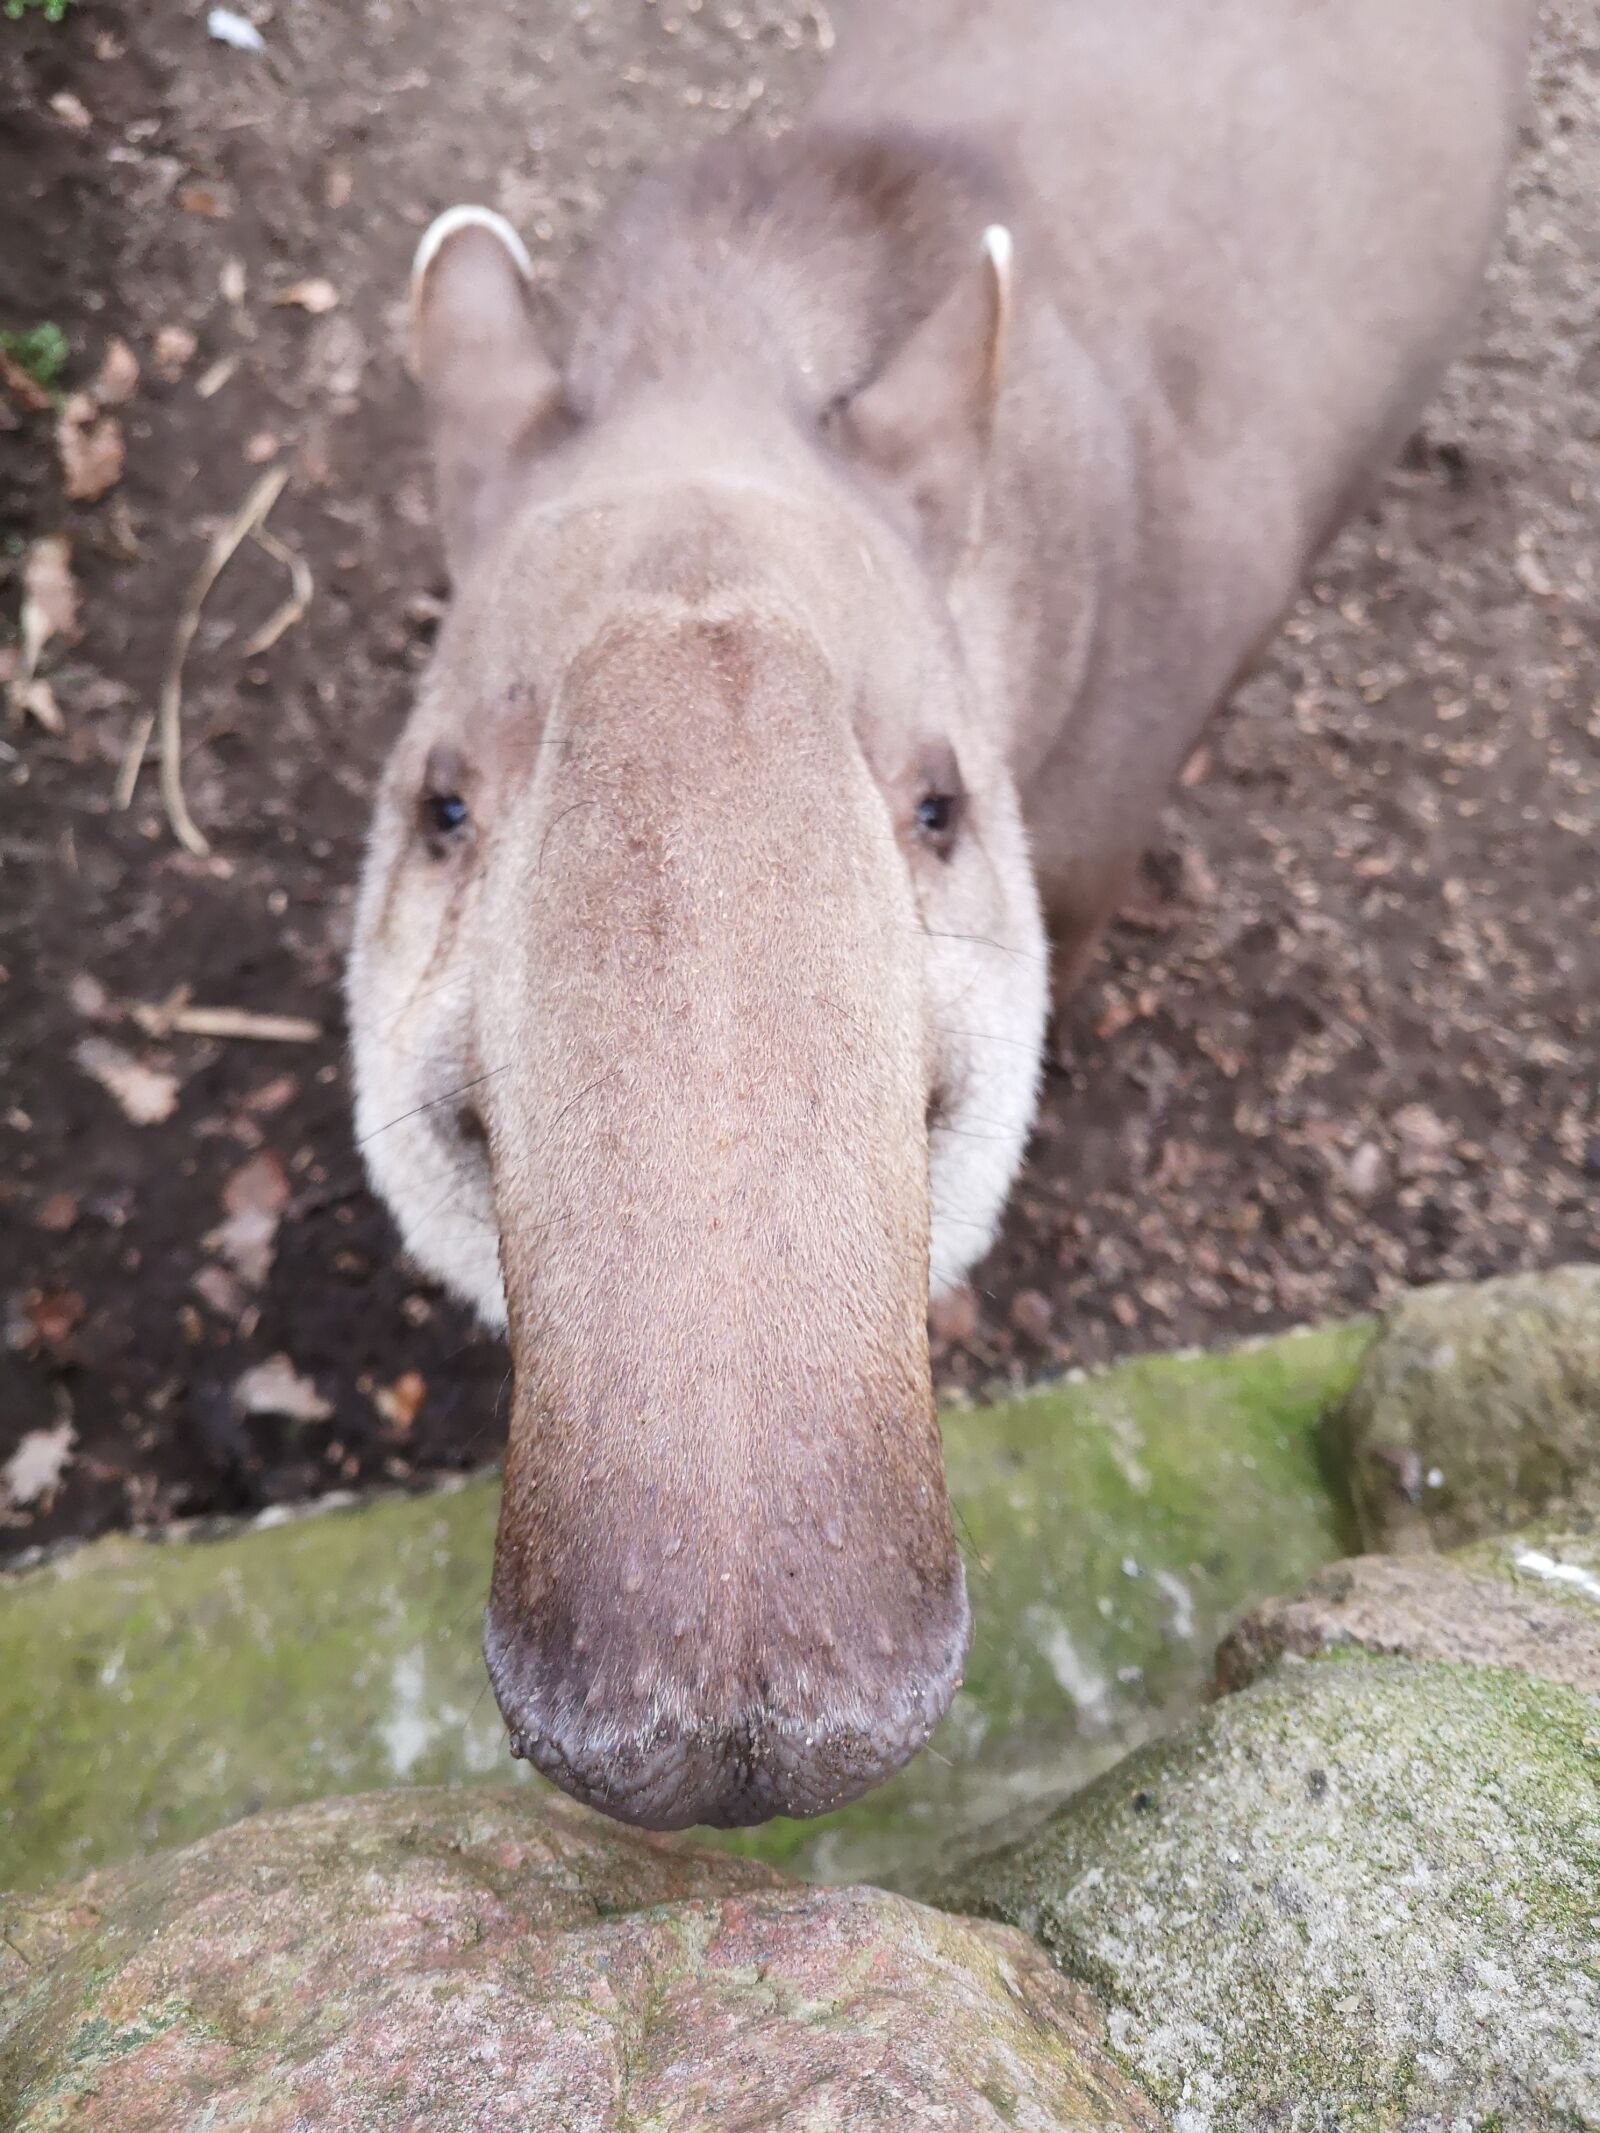 HUAWEI P20 sample photo. Tapir, nose, animal photography